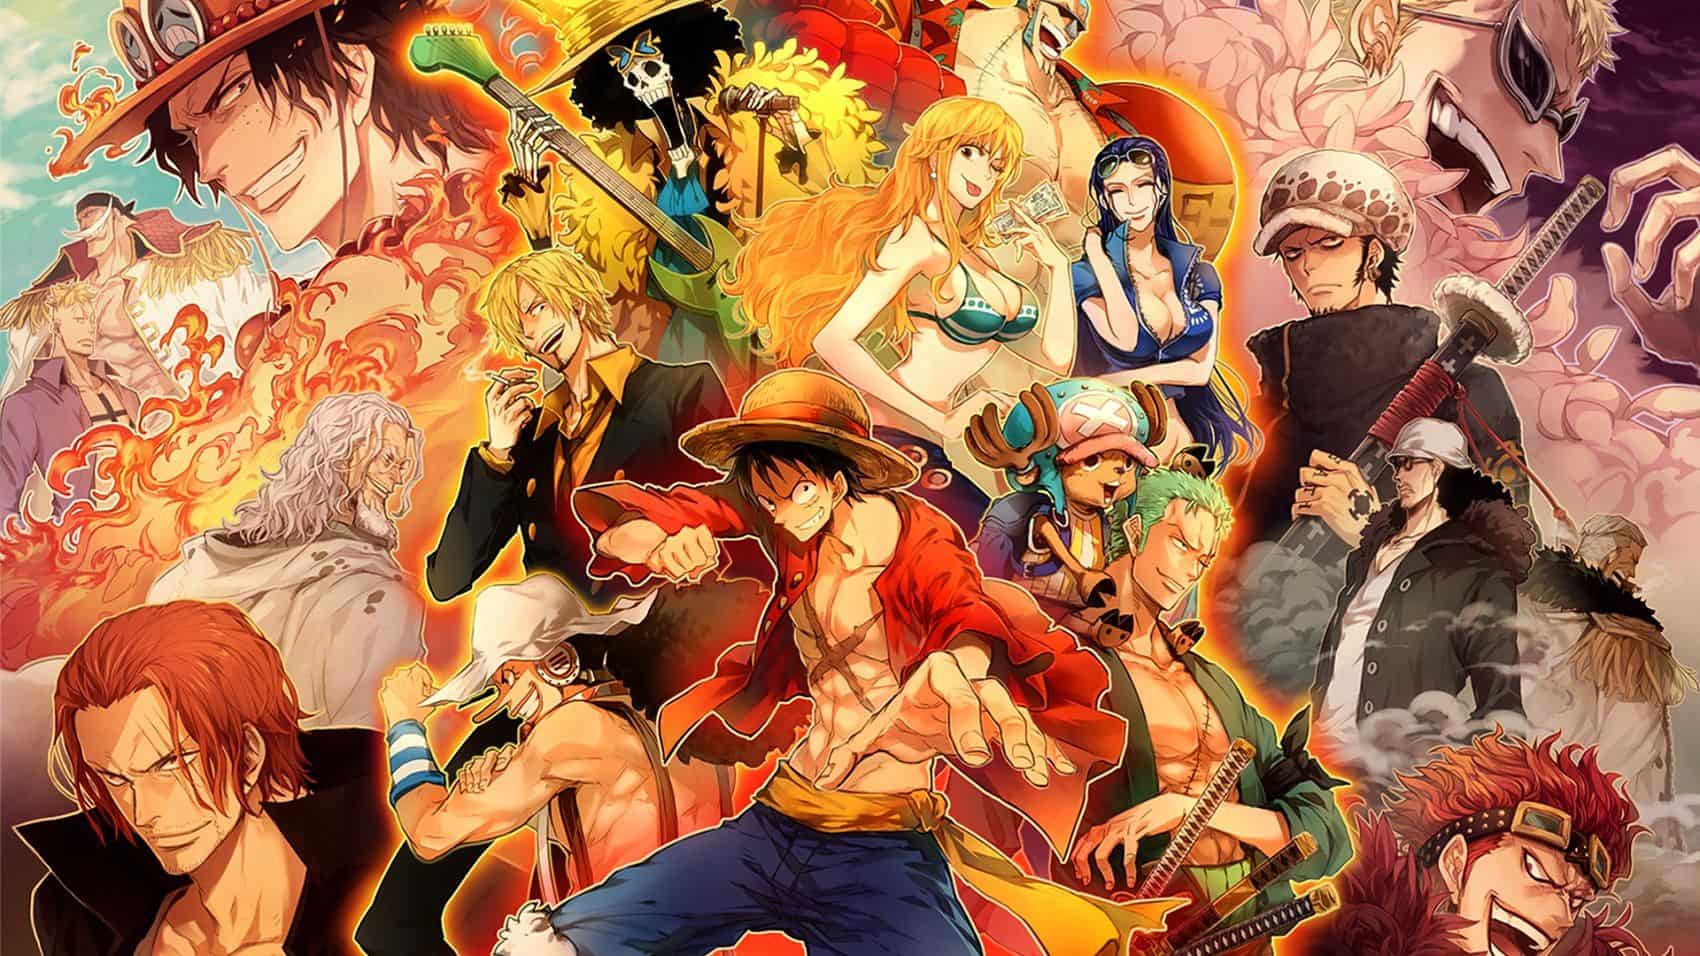 Coole One Piece Bilder